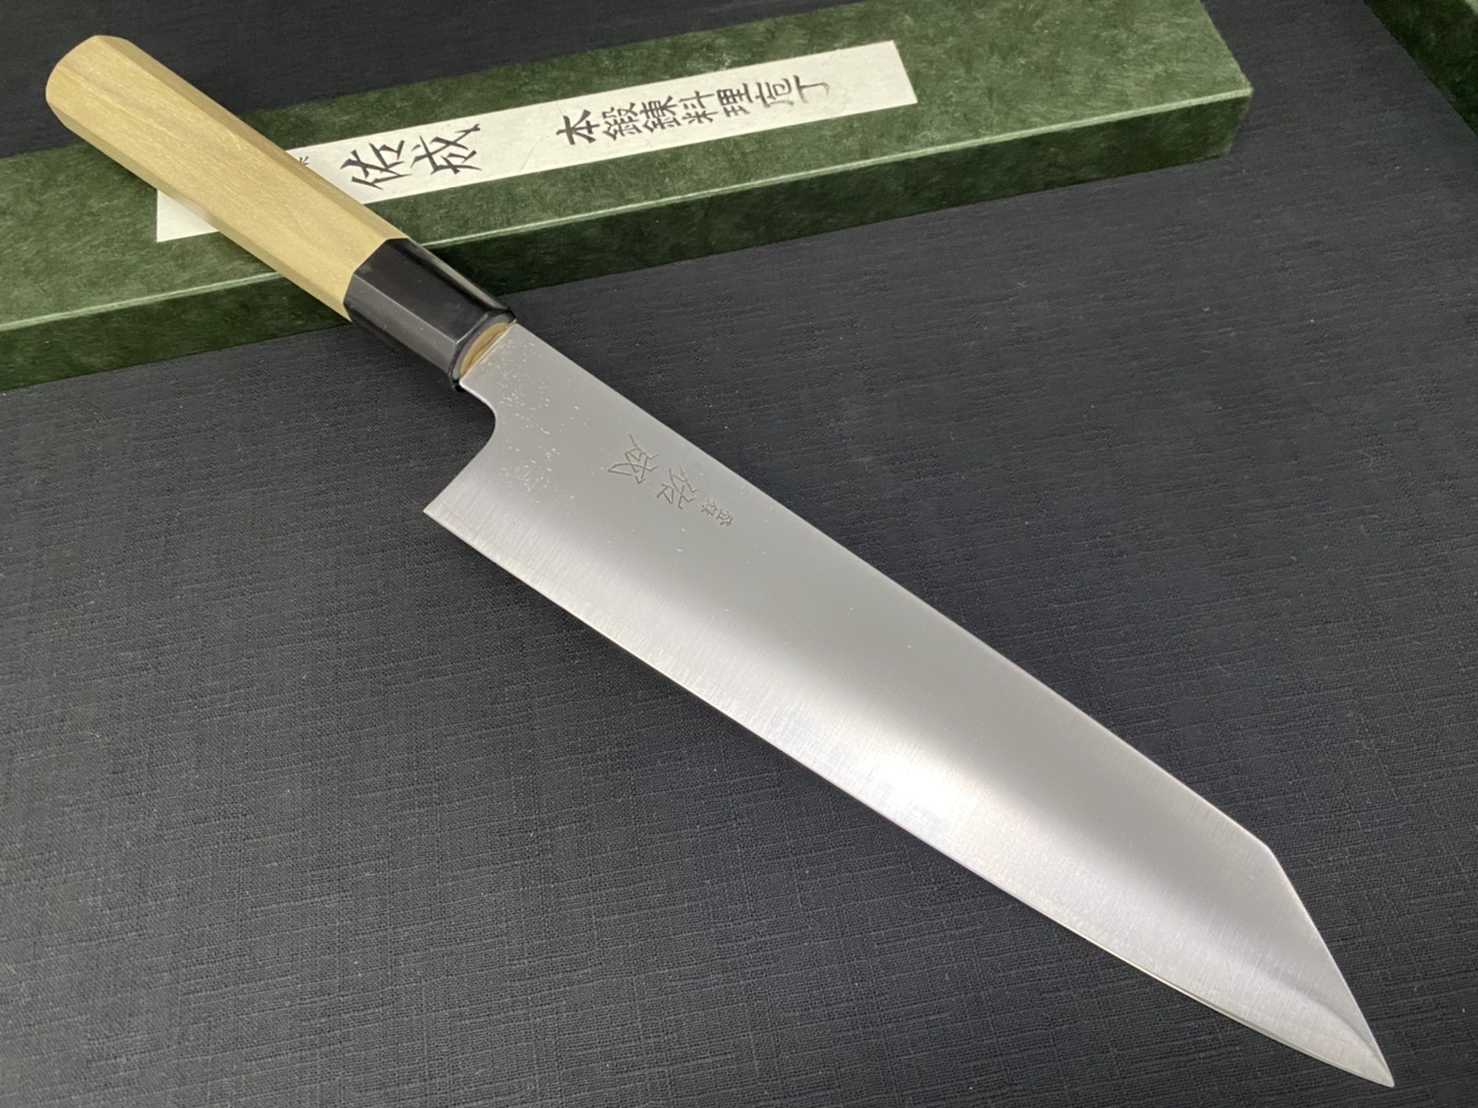 💖現貨💖 佑成【 SG-2 粉末鋼 (抗鏽) 劍形和牛刀 24cm 】日本製  廚房刀具  八煌刃物💖現貨💖